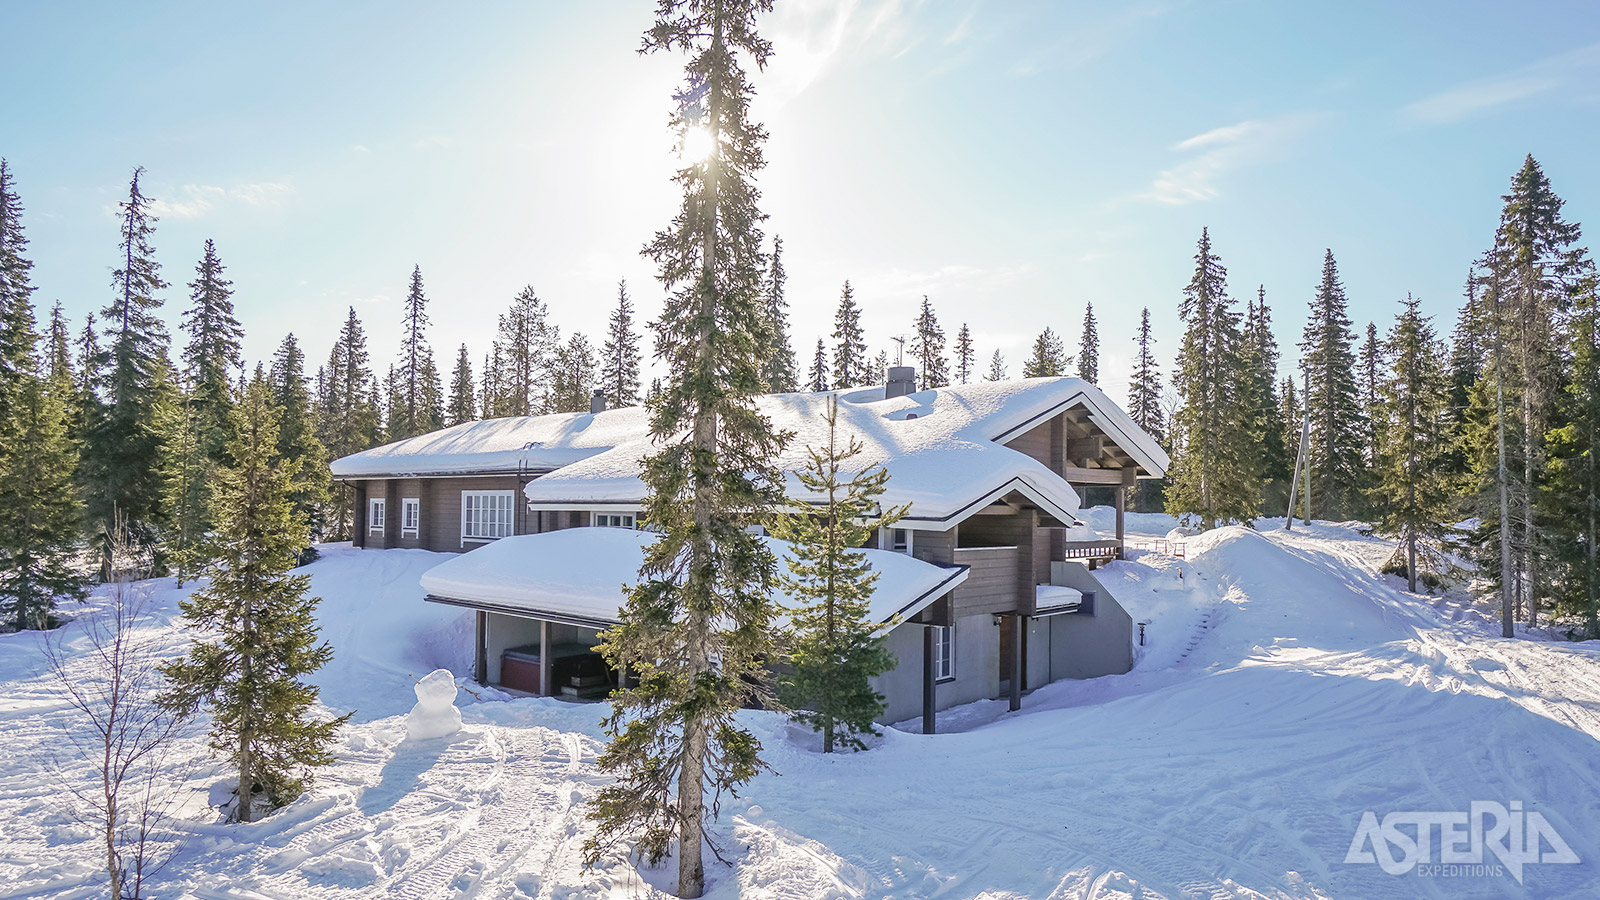 Je verblijft in een gezellige en comfortabele lodge in één van de mooiste streken van Fins Lapland